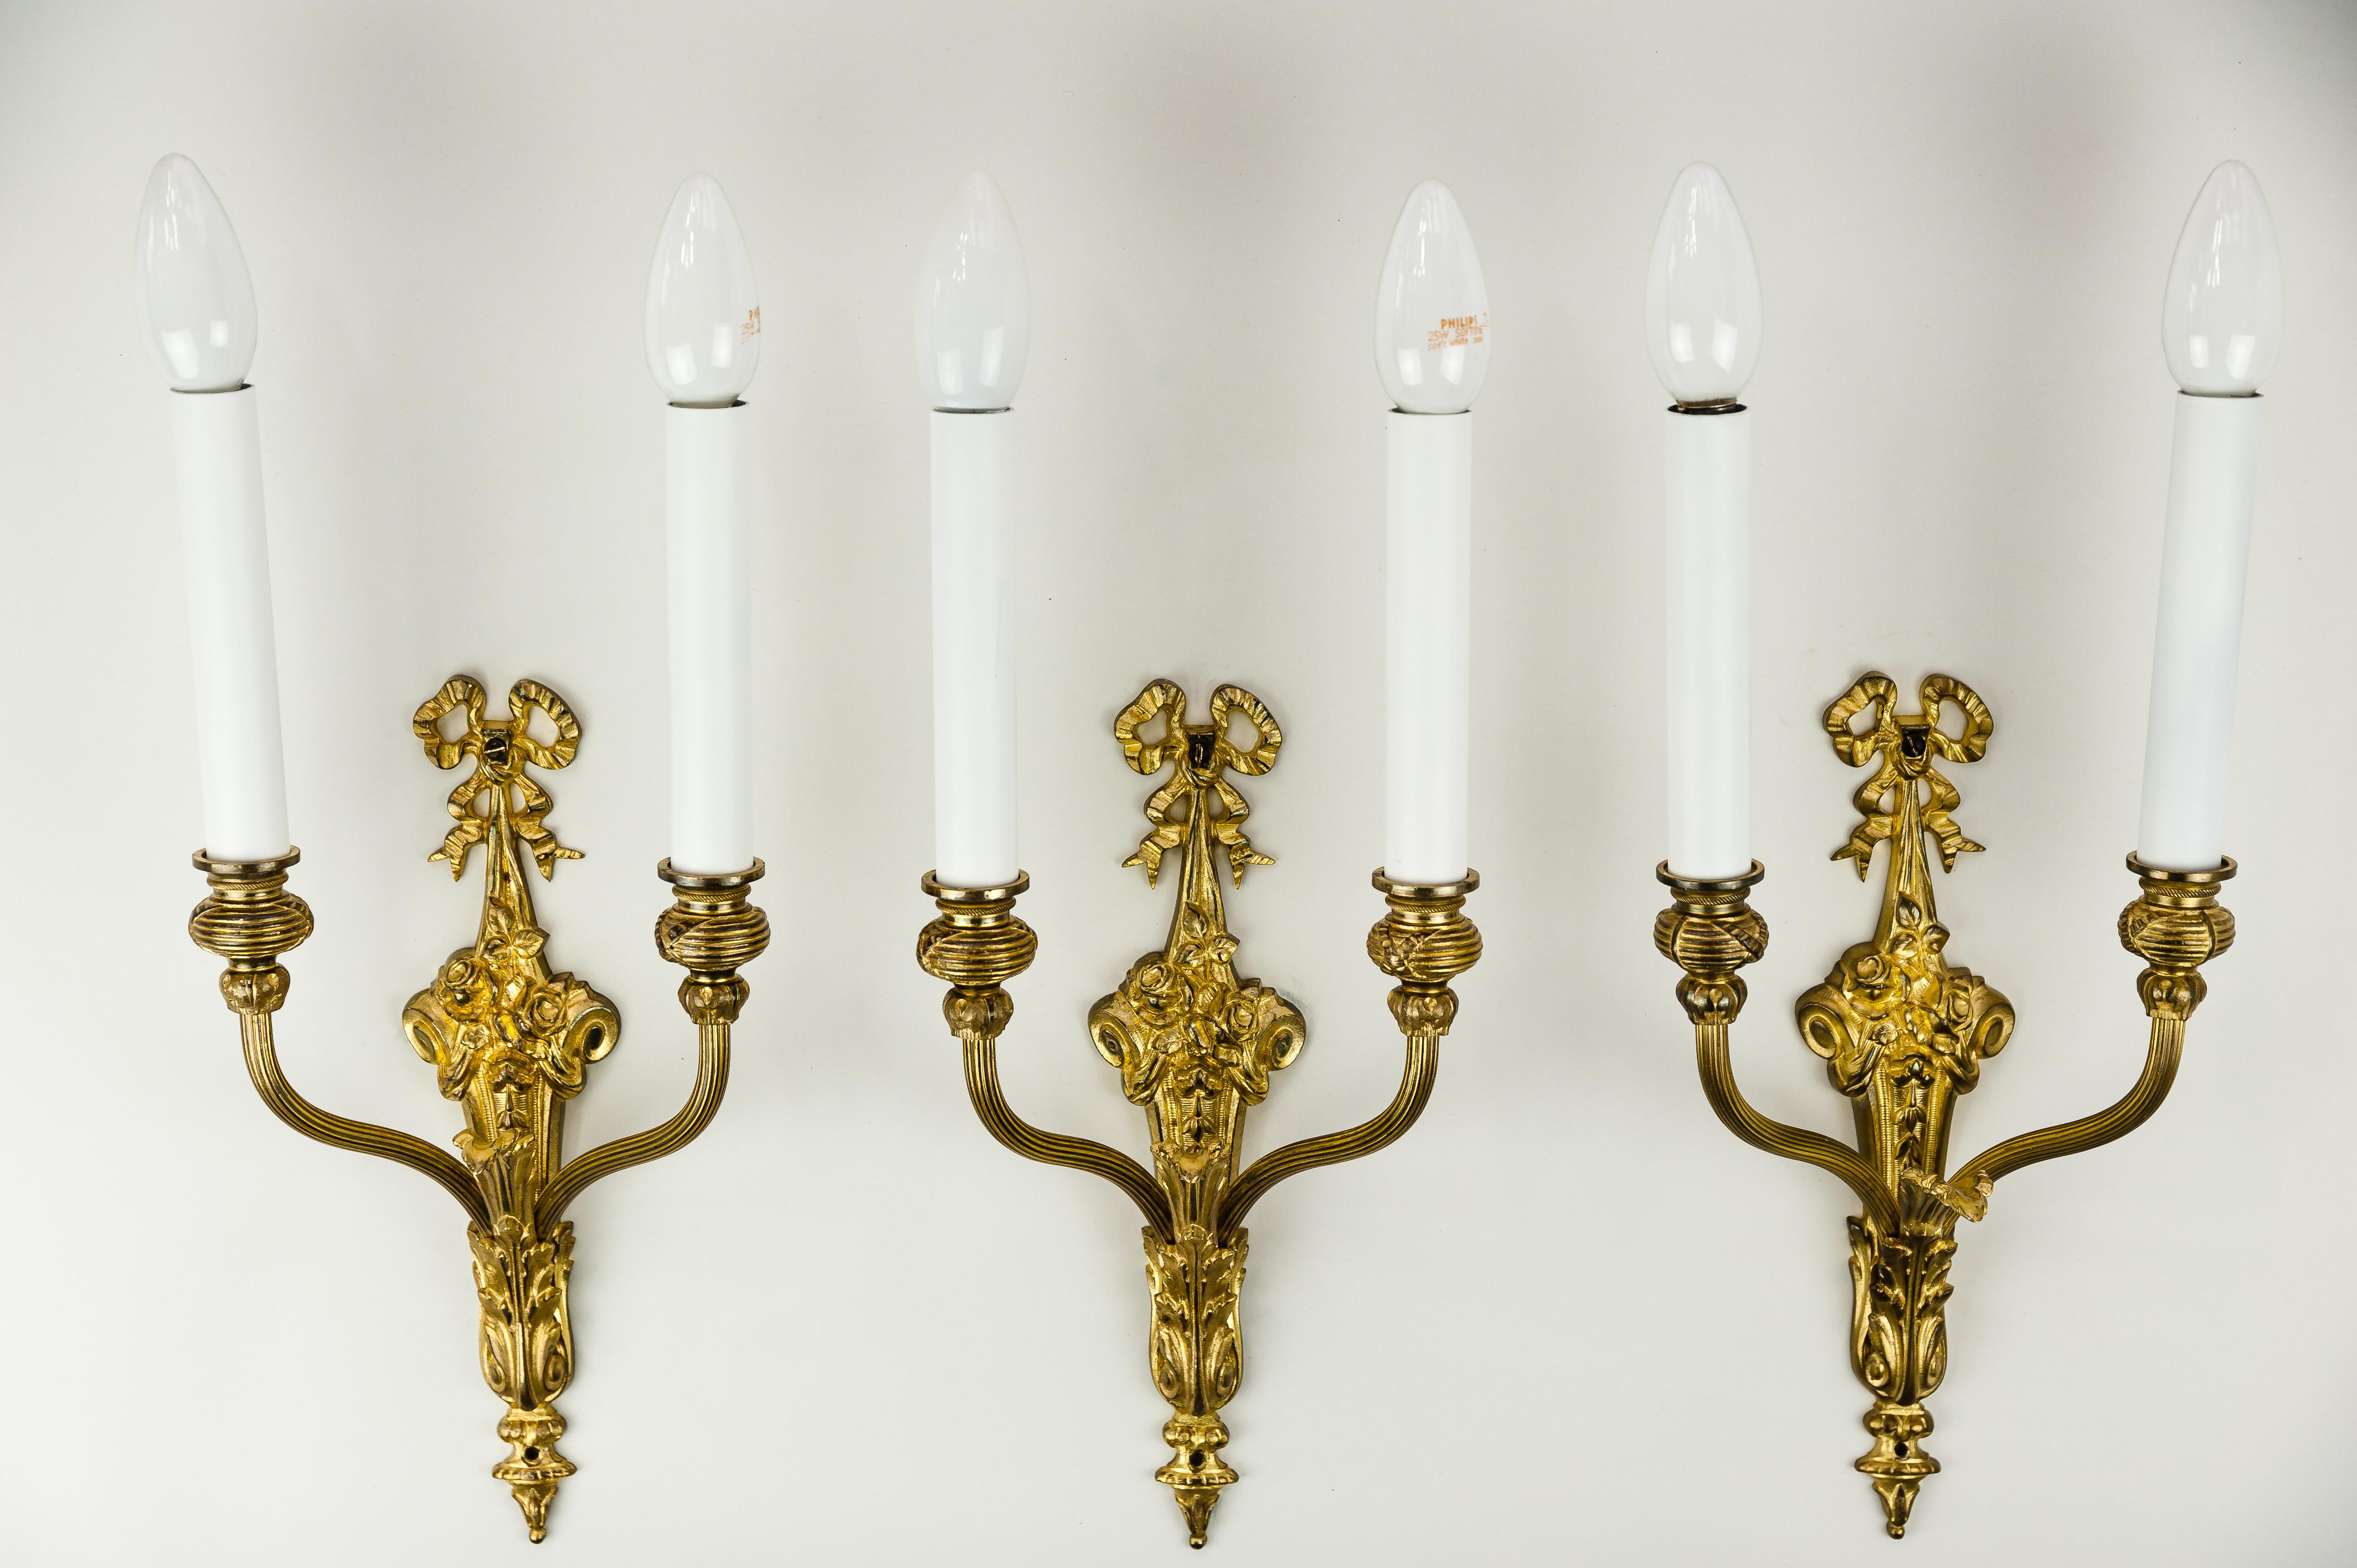 Three historistic wall lamps, circa 1890s
Fire gilded
Original condition.